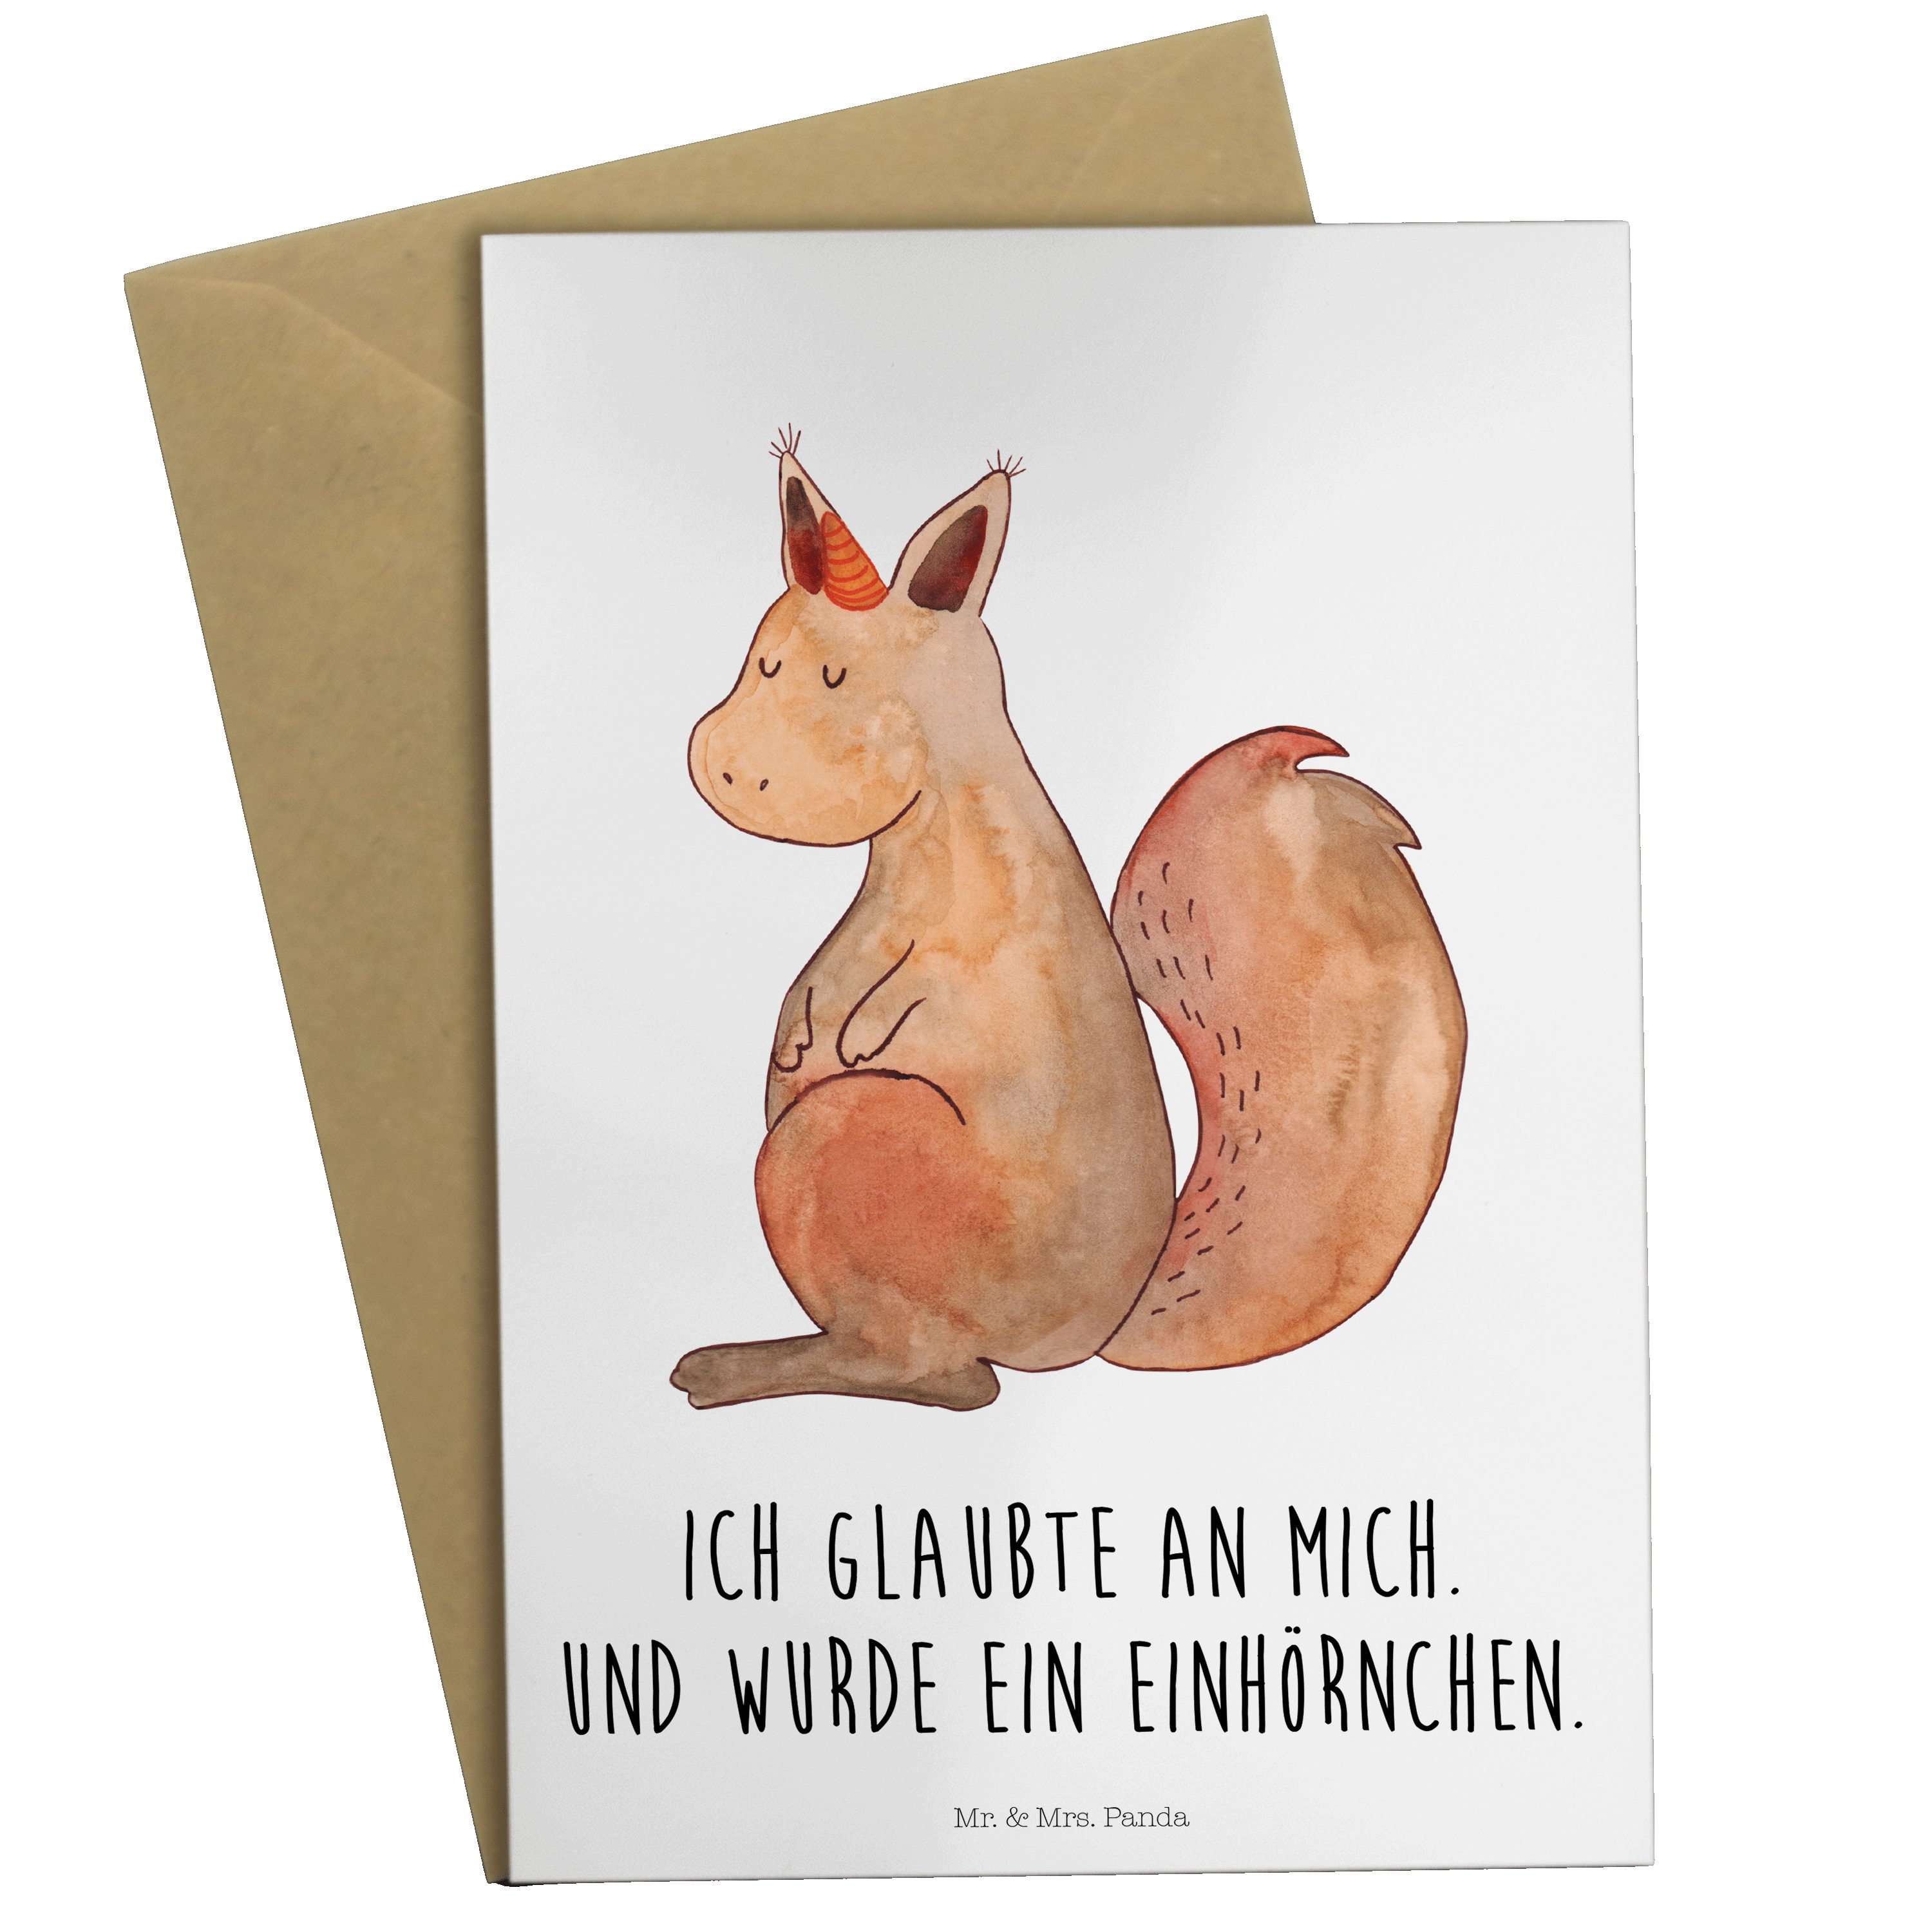 Mr. & Mrs. Panda Grußkarte Einhörnchen Glaube - Weiß - Geschenk, Einladungskarte, Eichhorn, Hoch